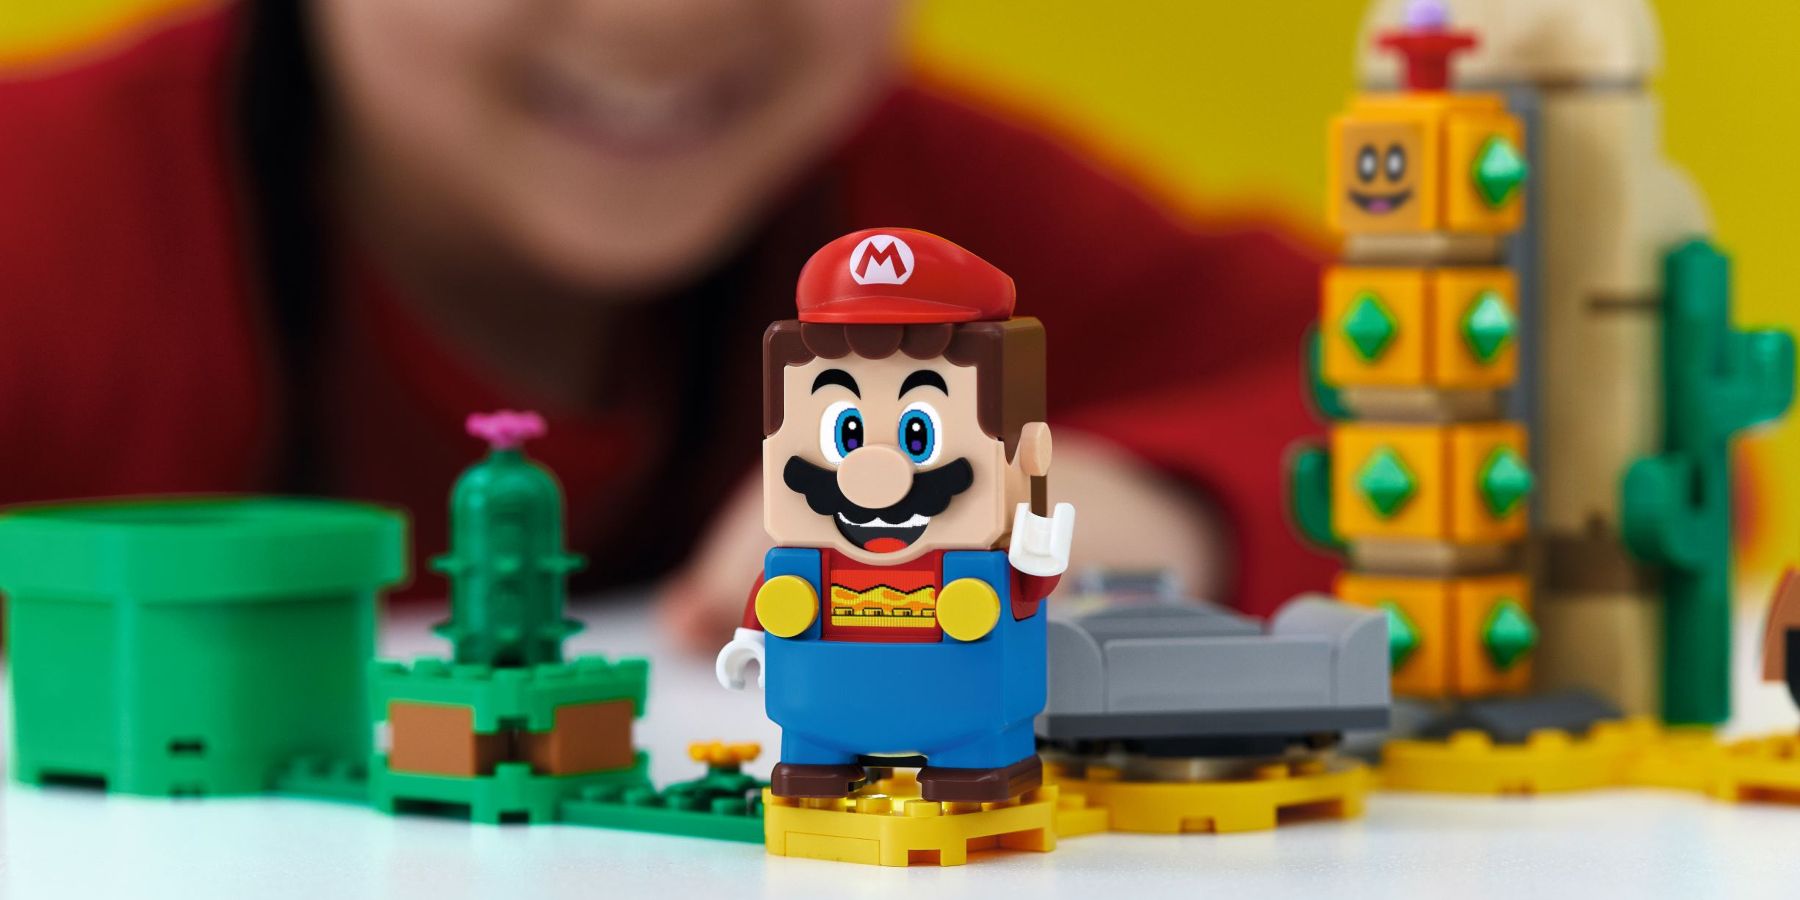 RUMOR: Official Legend of Zelda LEGO set leaked